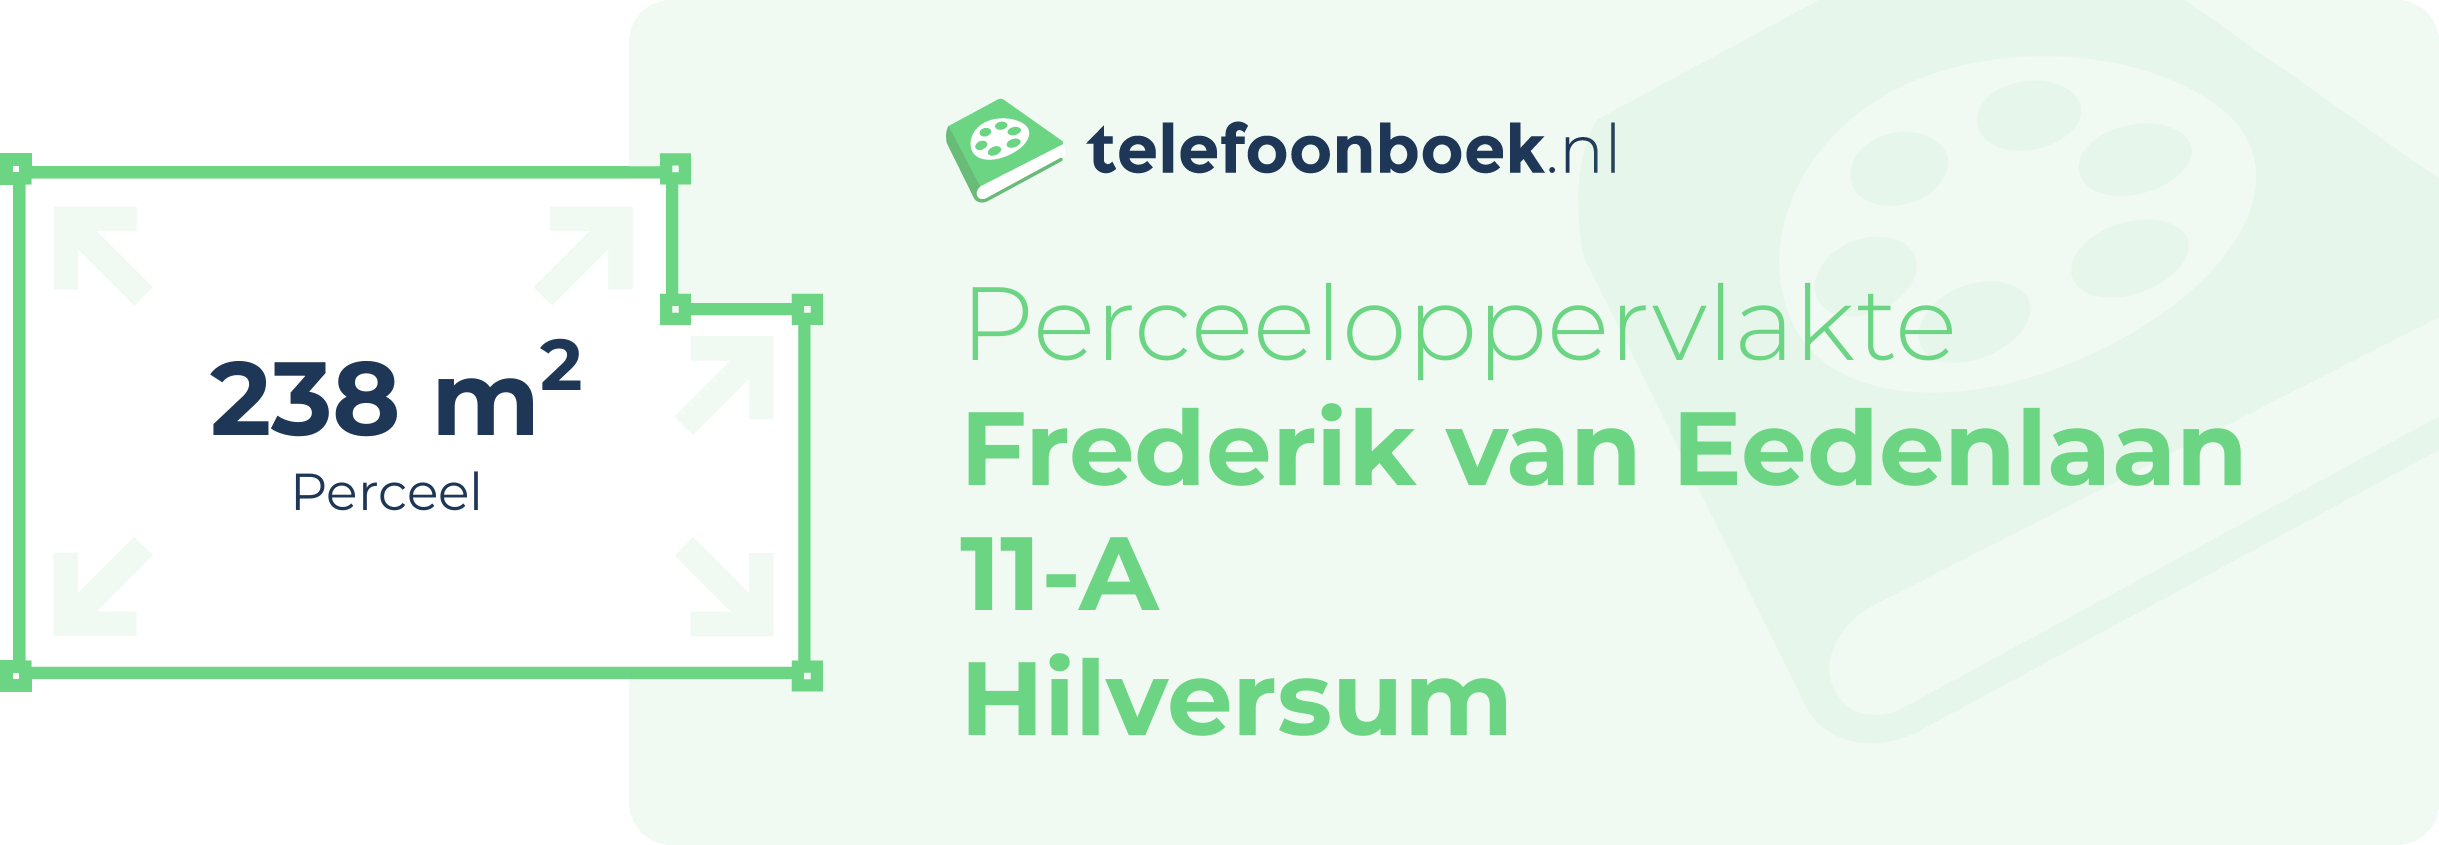 Perceeloppervlakte Frederik Van Eedenlaan 11-A Hilversum